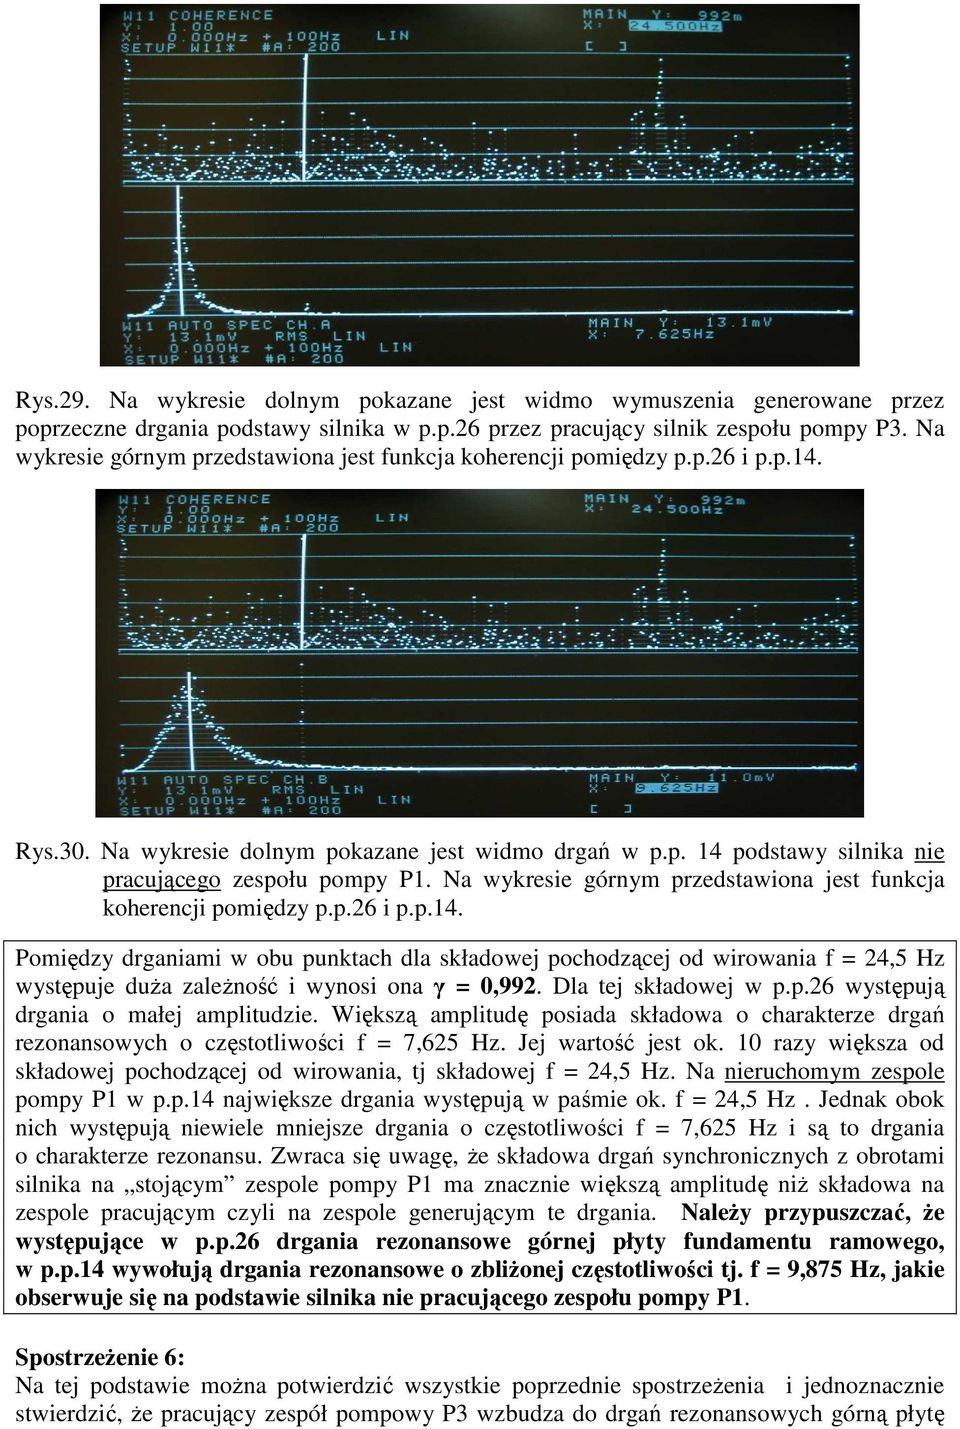 Na wykresie górnym przedstawiona jest funkcja koherencji pomiędzy p.p.26 i p.p.14.